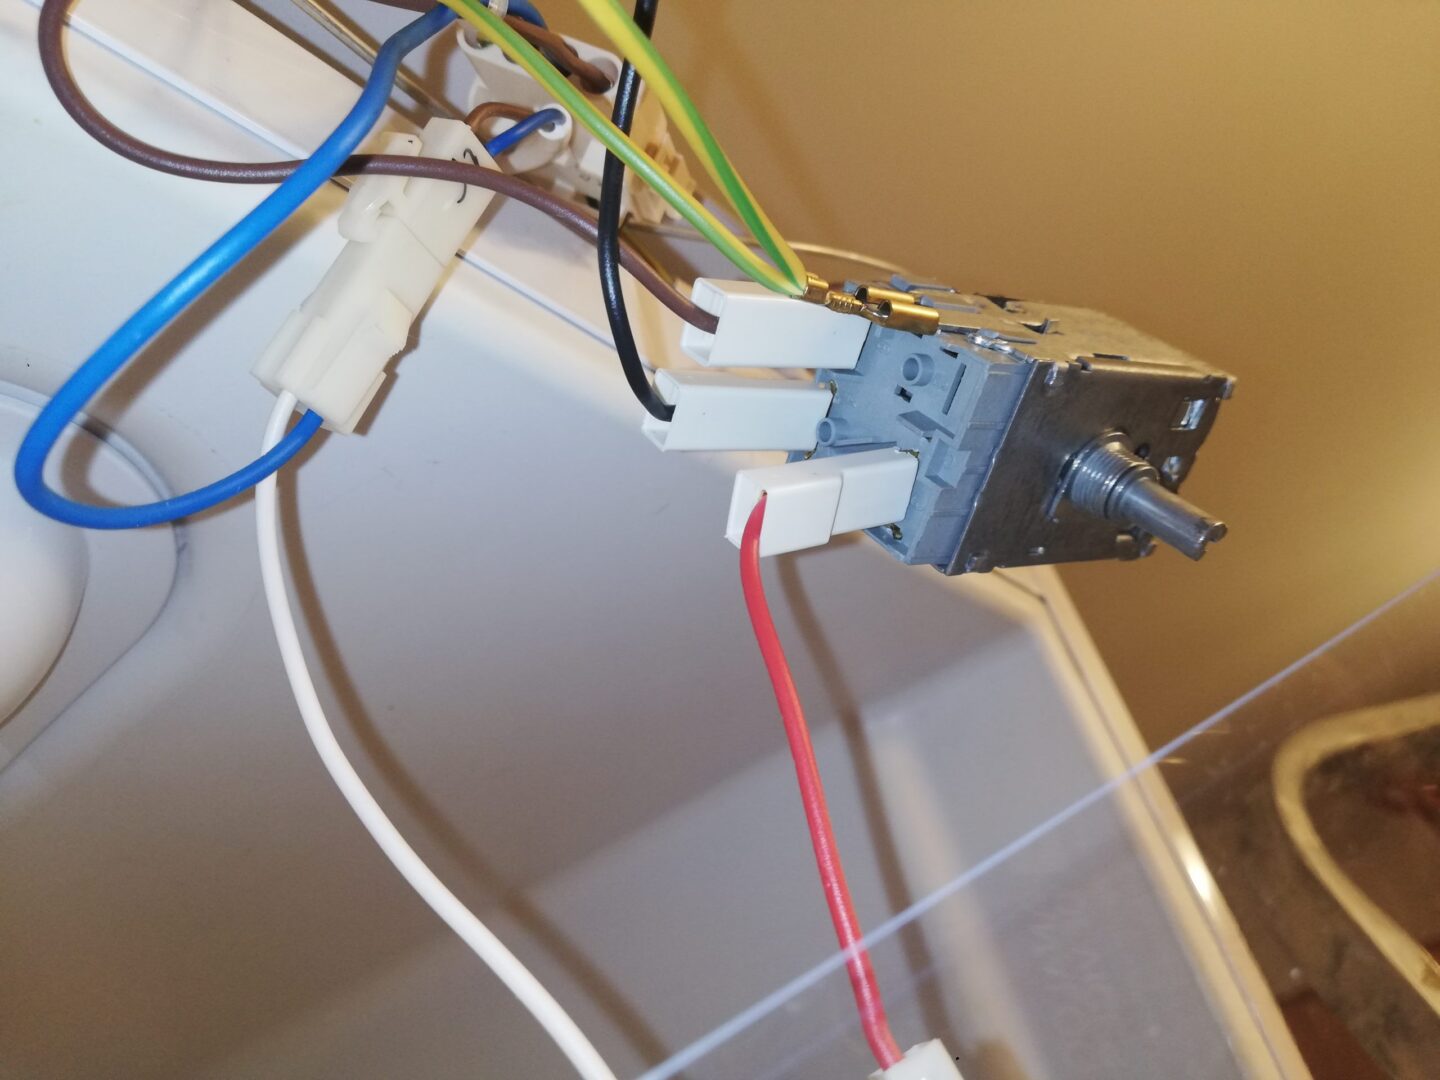 Wymiana termostatu w lodówce - widok na kable